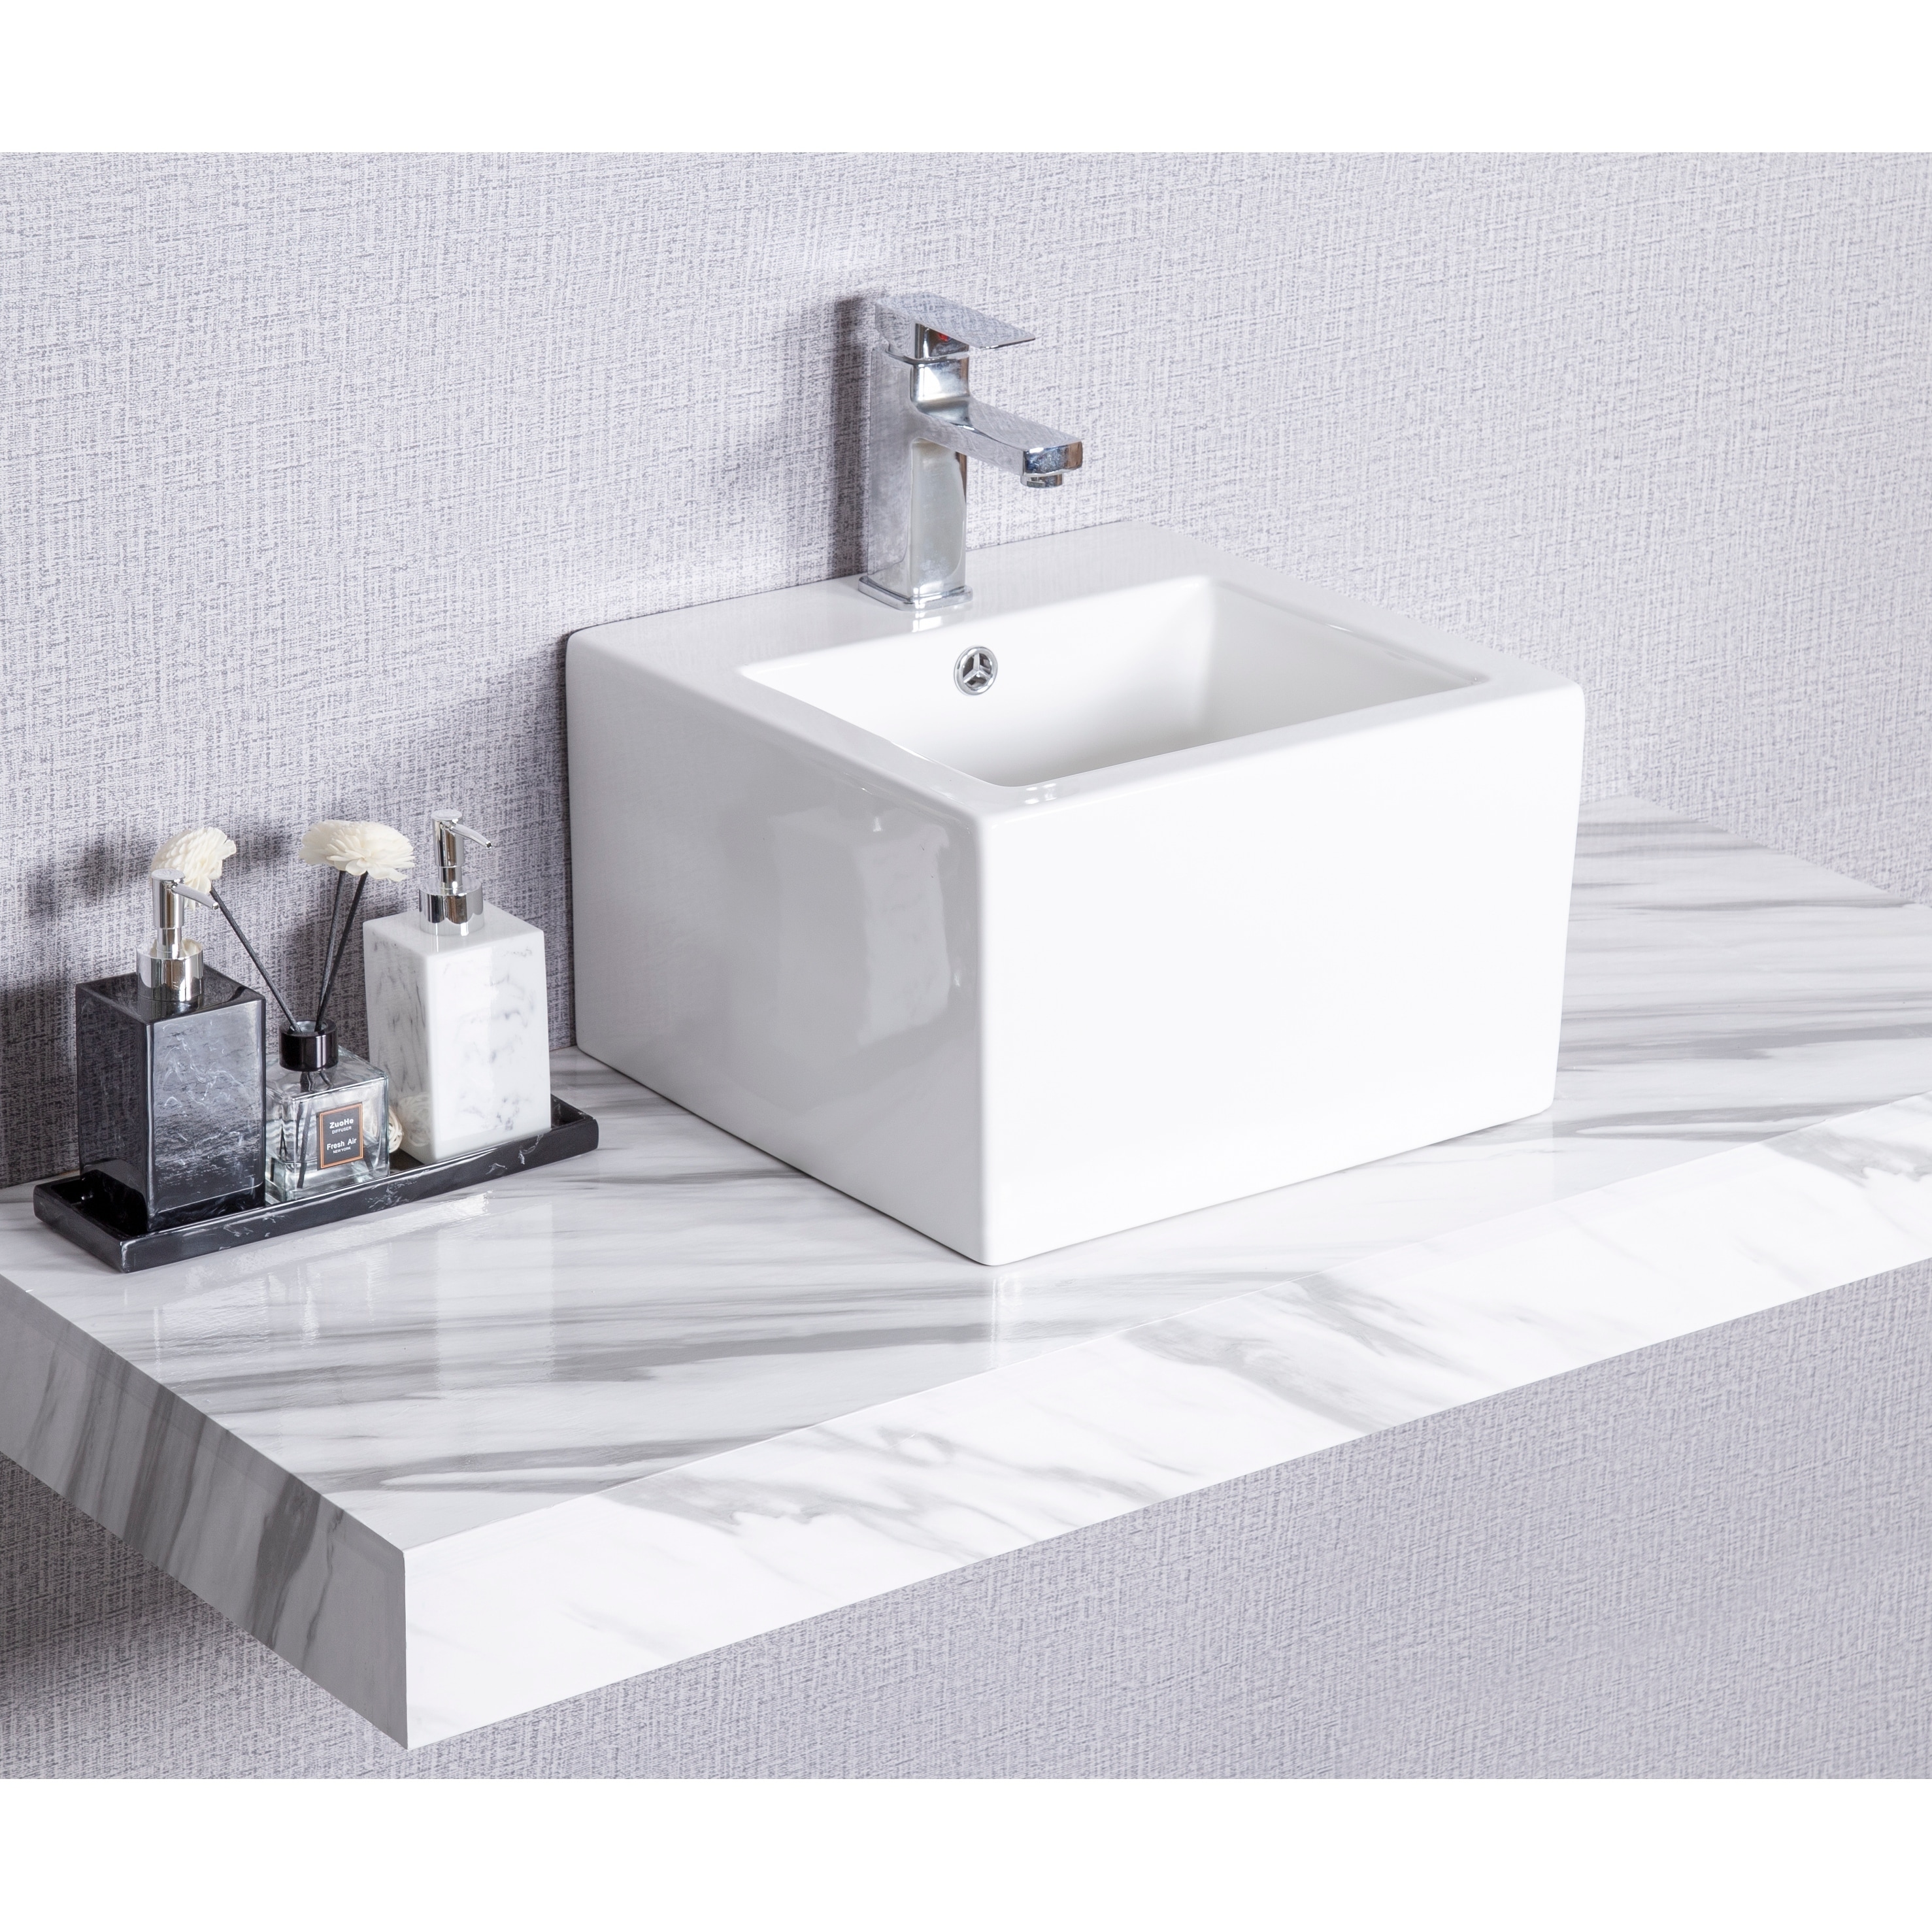 Shop Cb Home Modern White Ceramic Square Bathroom Countertop Basin